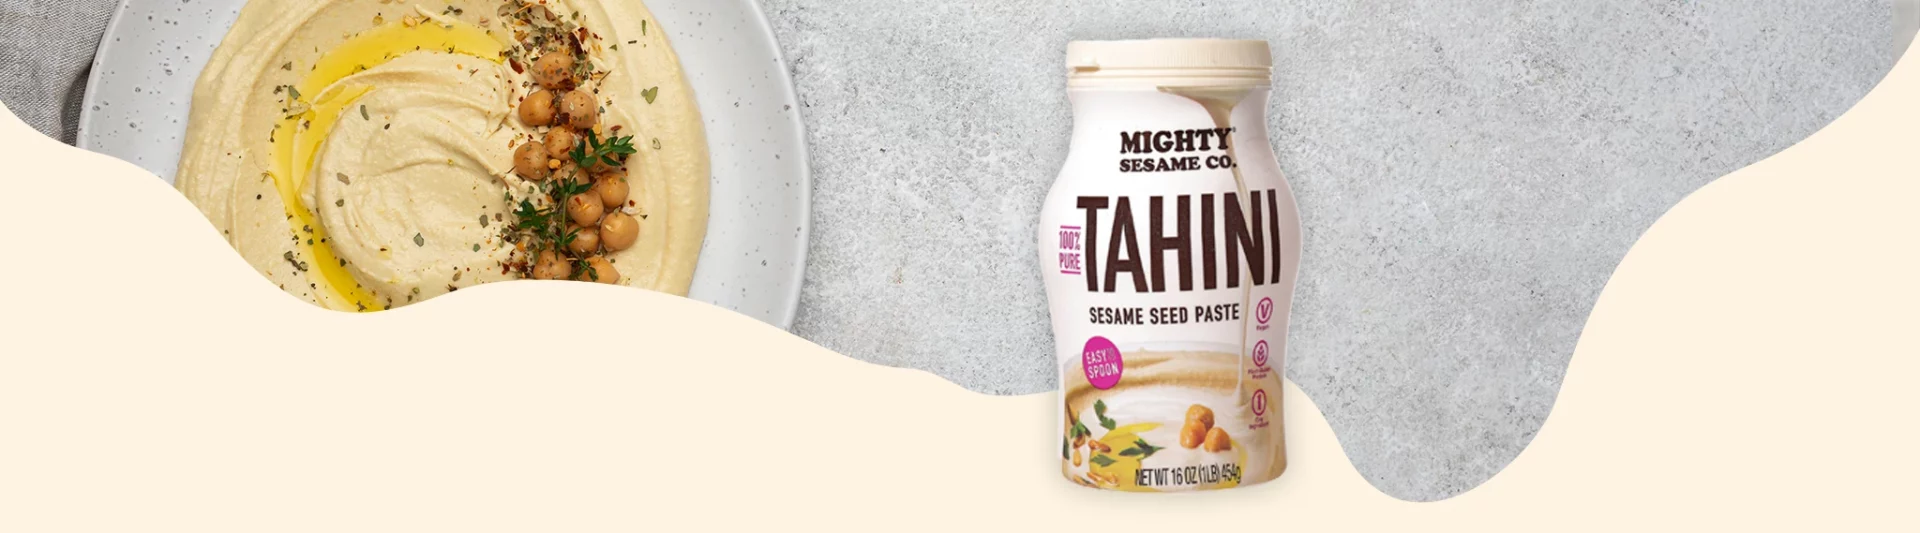 come utilizzare la salsa tahini mighty sesame oscar78